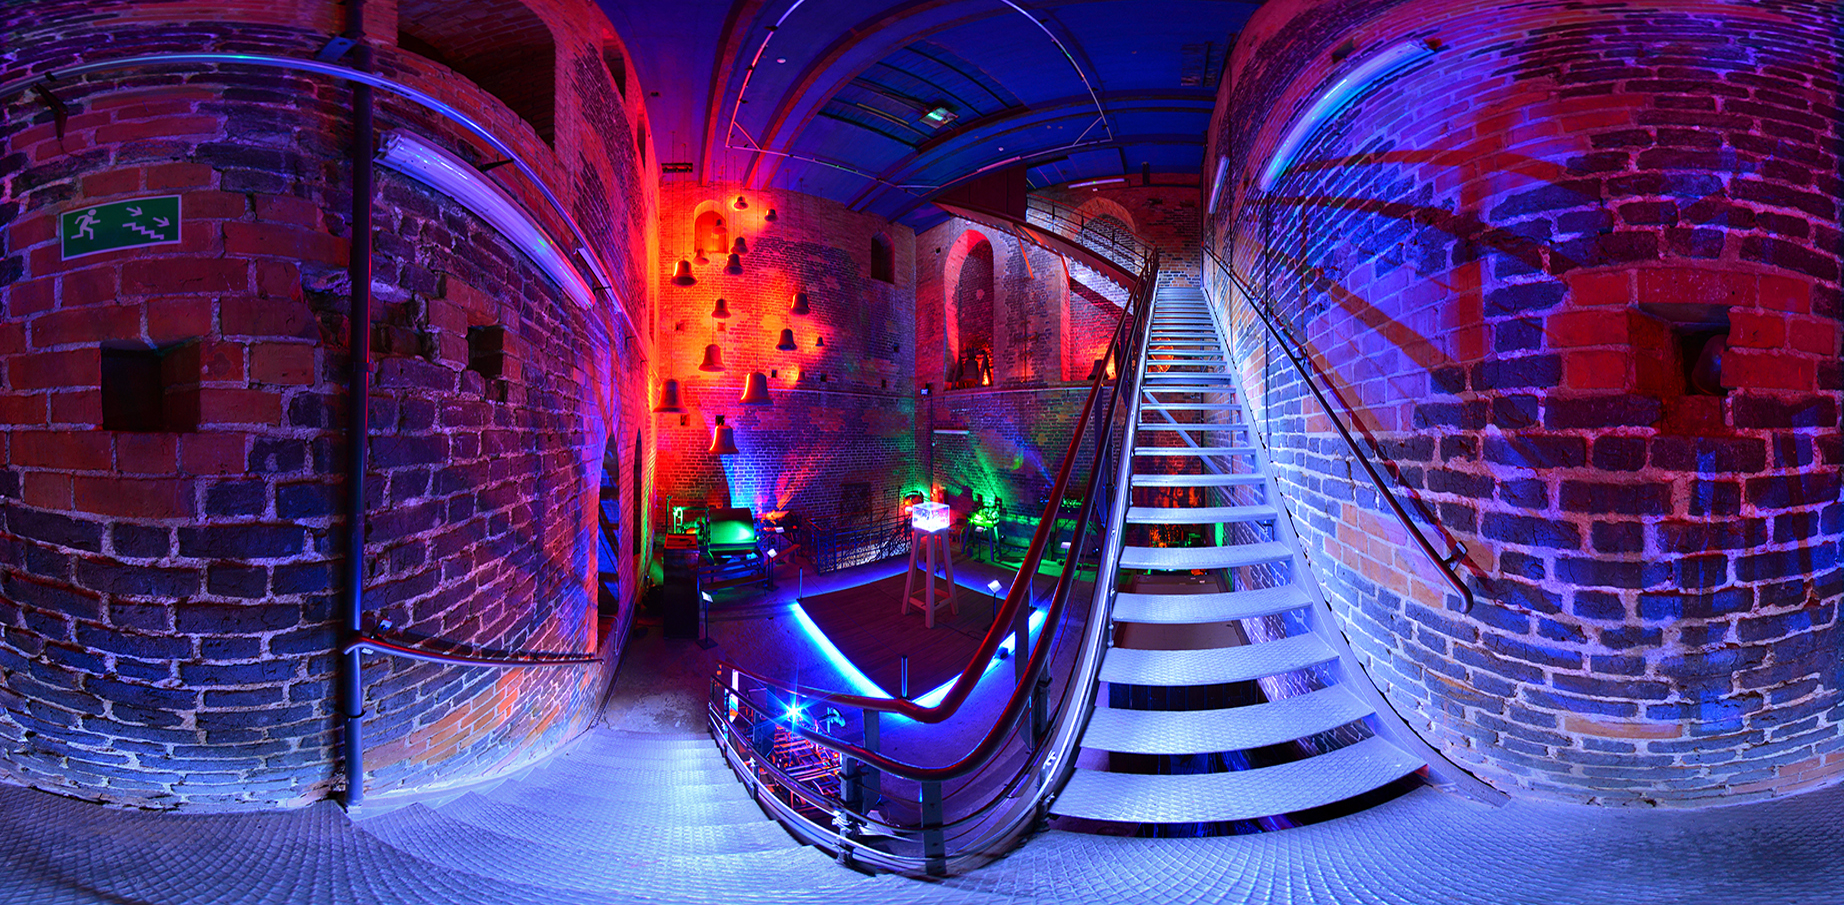 Zdjęcie panoramiczne zrobione ze schodów. W dole widok na salę na poziomie drugim, po prawej dalsze schody prowadzące na szczyt wieży.